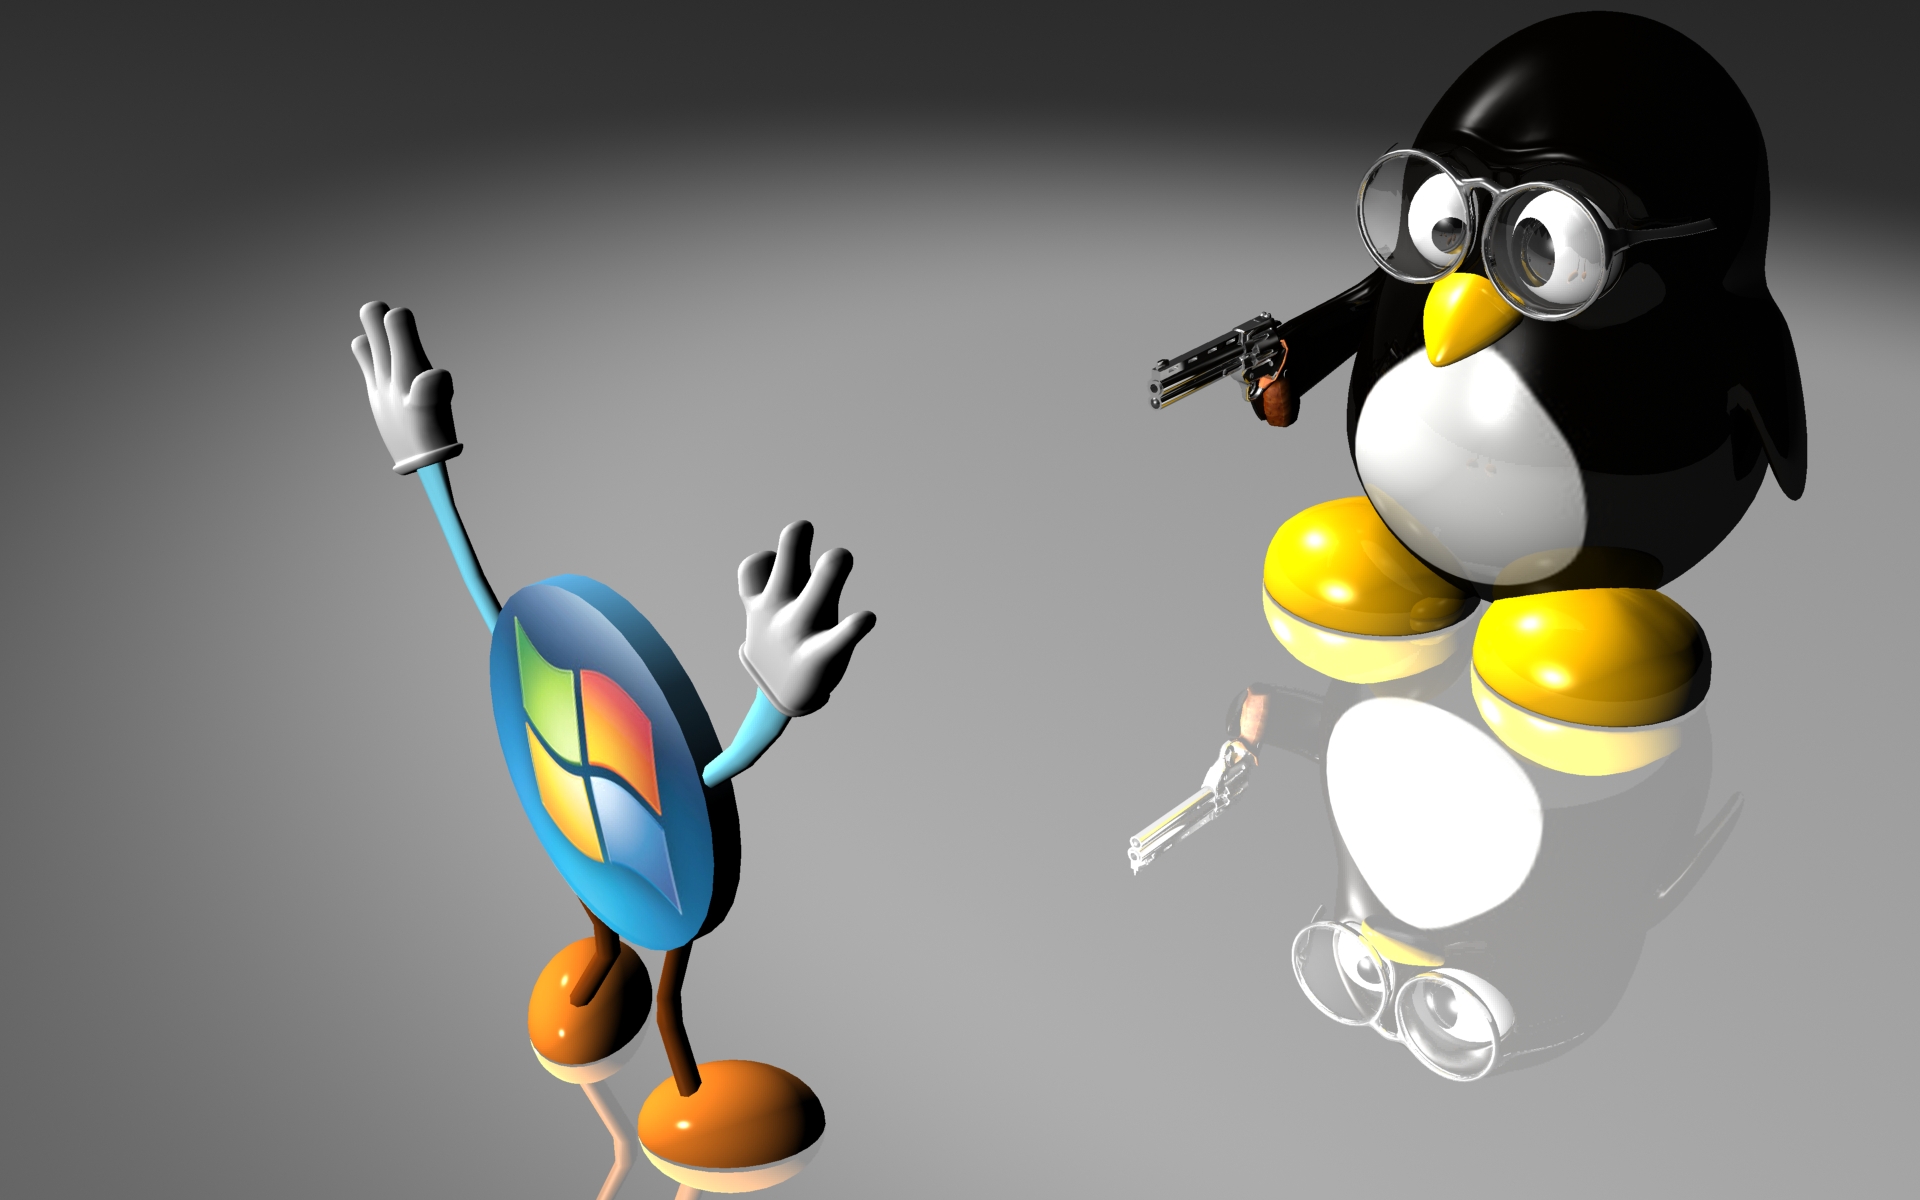 linux, humor, windows, technology, gun, penguin wallpaper for mobile